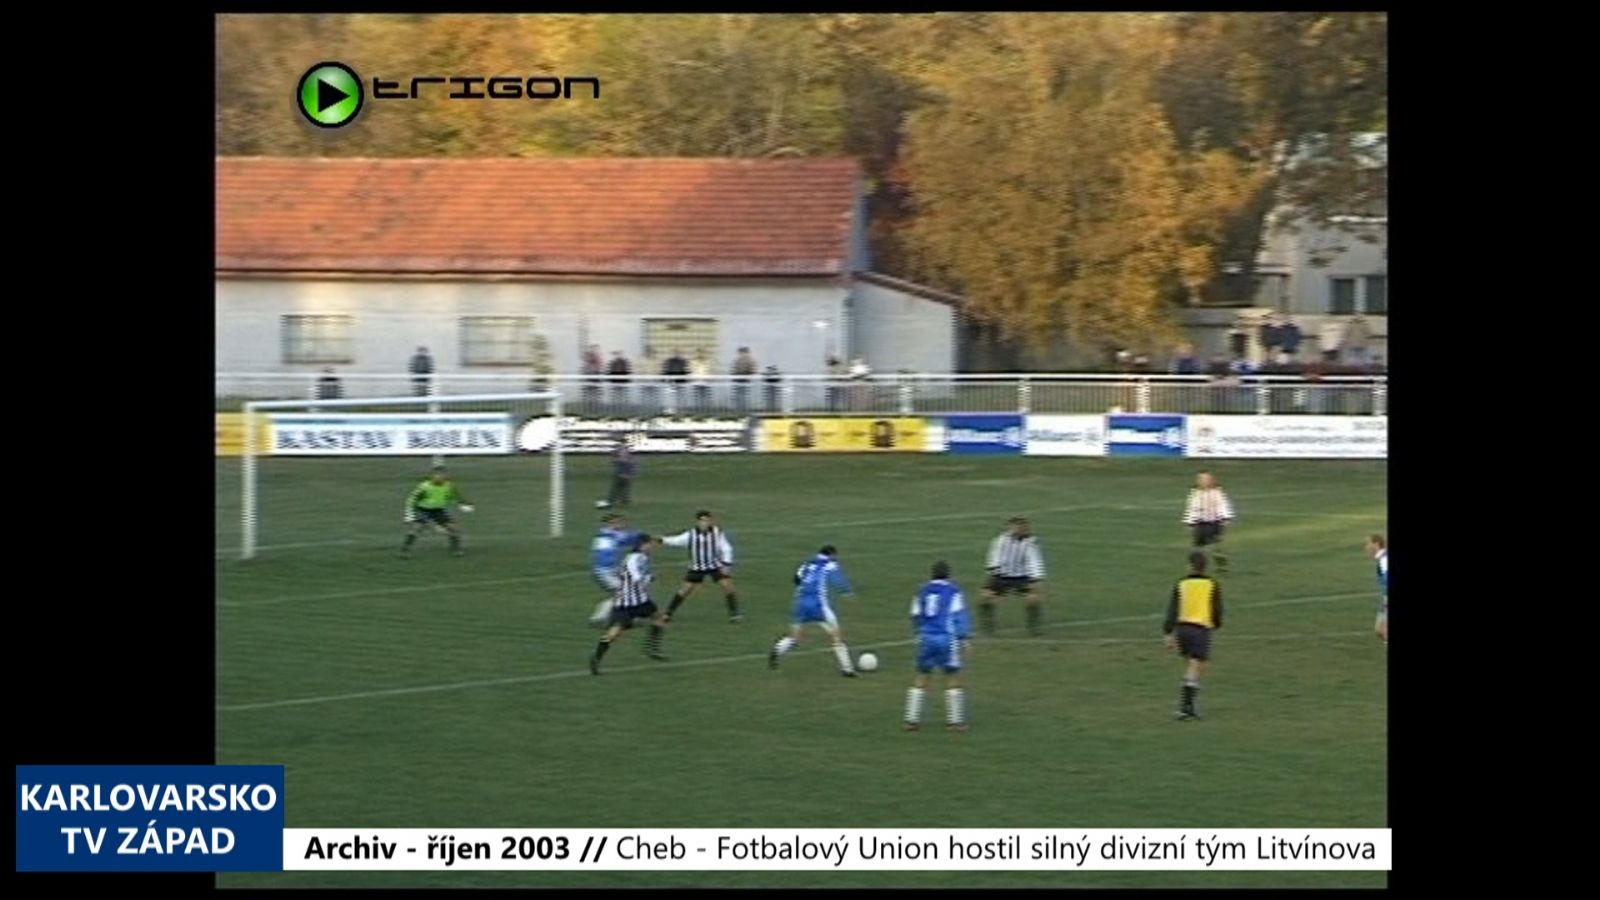 2003 – Cheb: Fotbalový Union hostil silný divizní tým Litvínova (TV Západ)